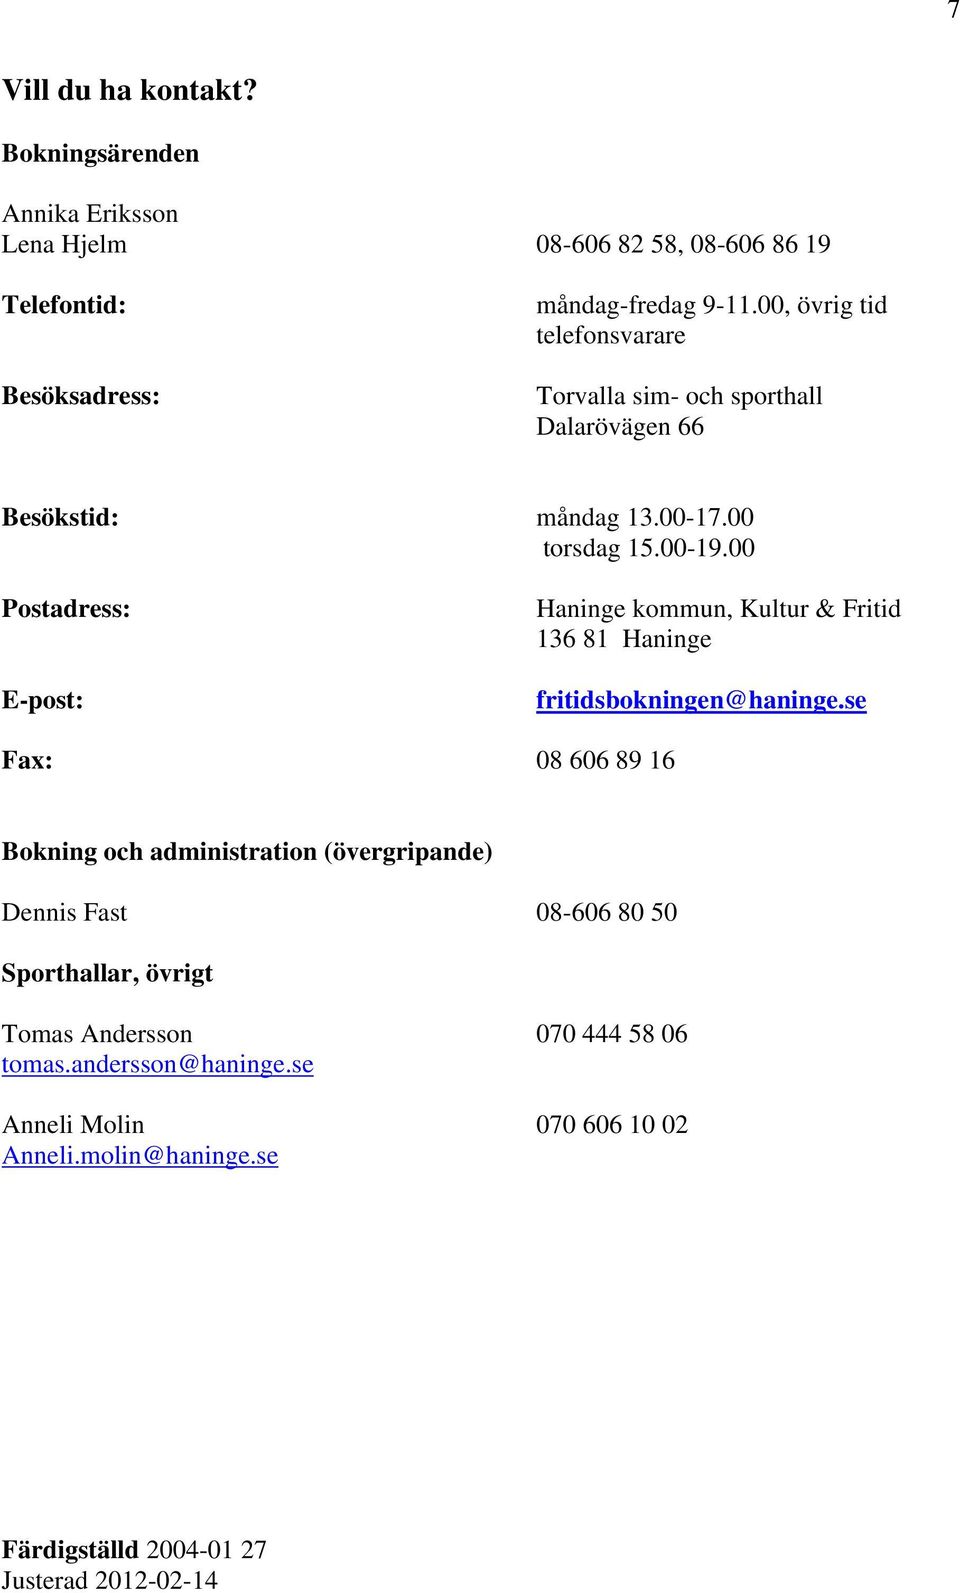 00 Postadress: E-post: Haninge kommun, Kultur & Fritid 136 81 Haninge fritidsbokningen@haninge.